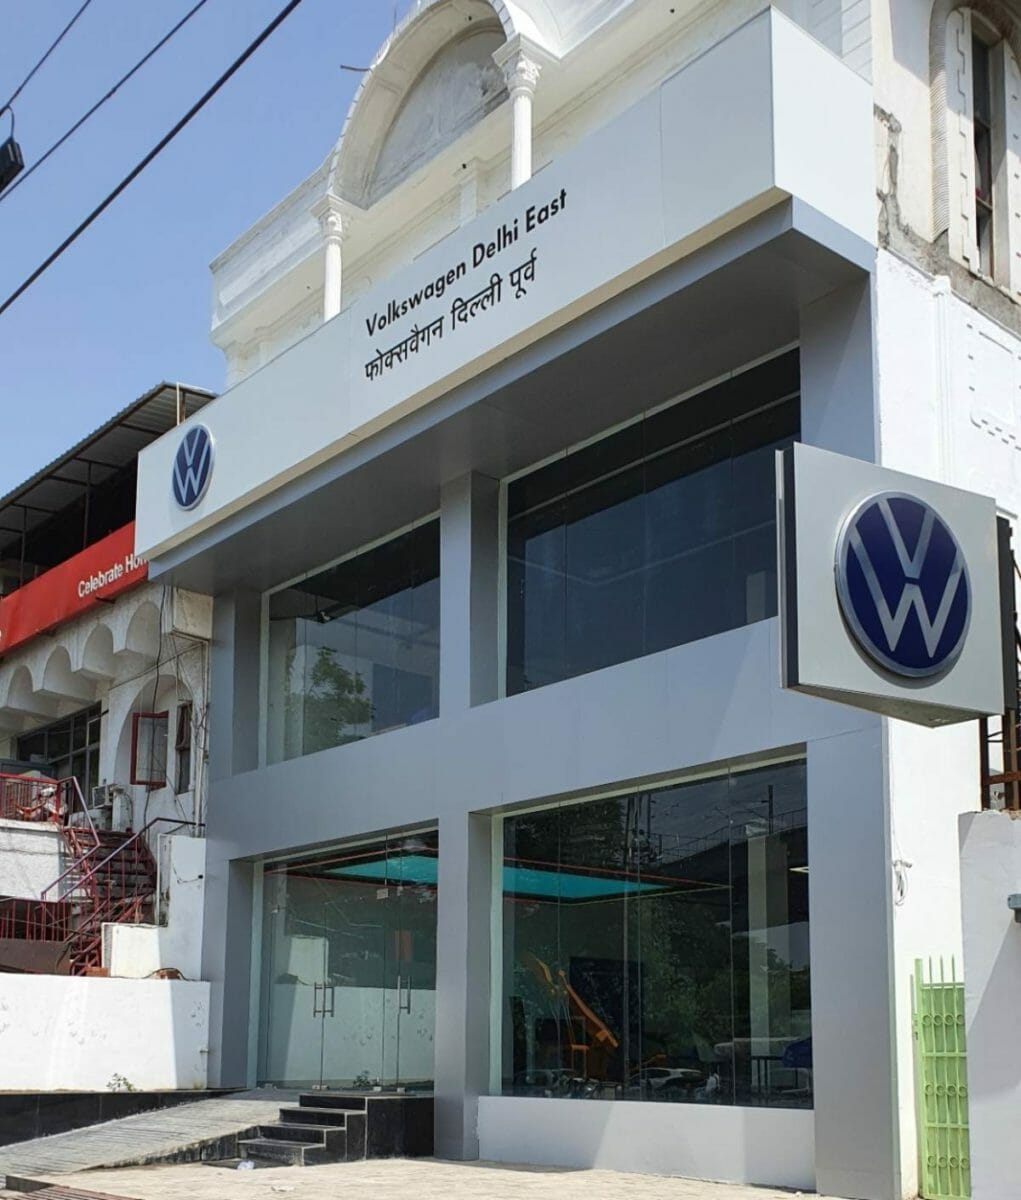 Volkswagen Delhi East (1)